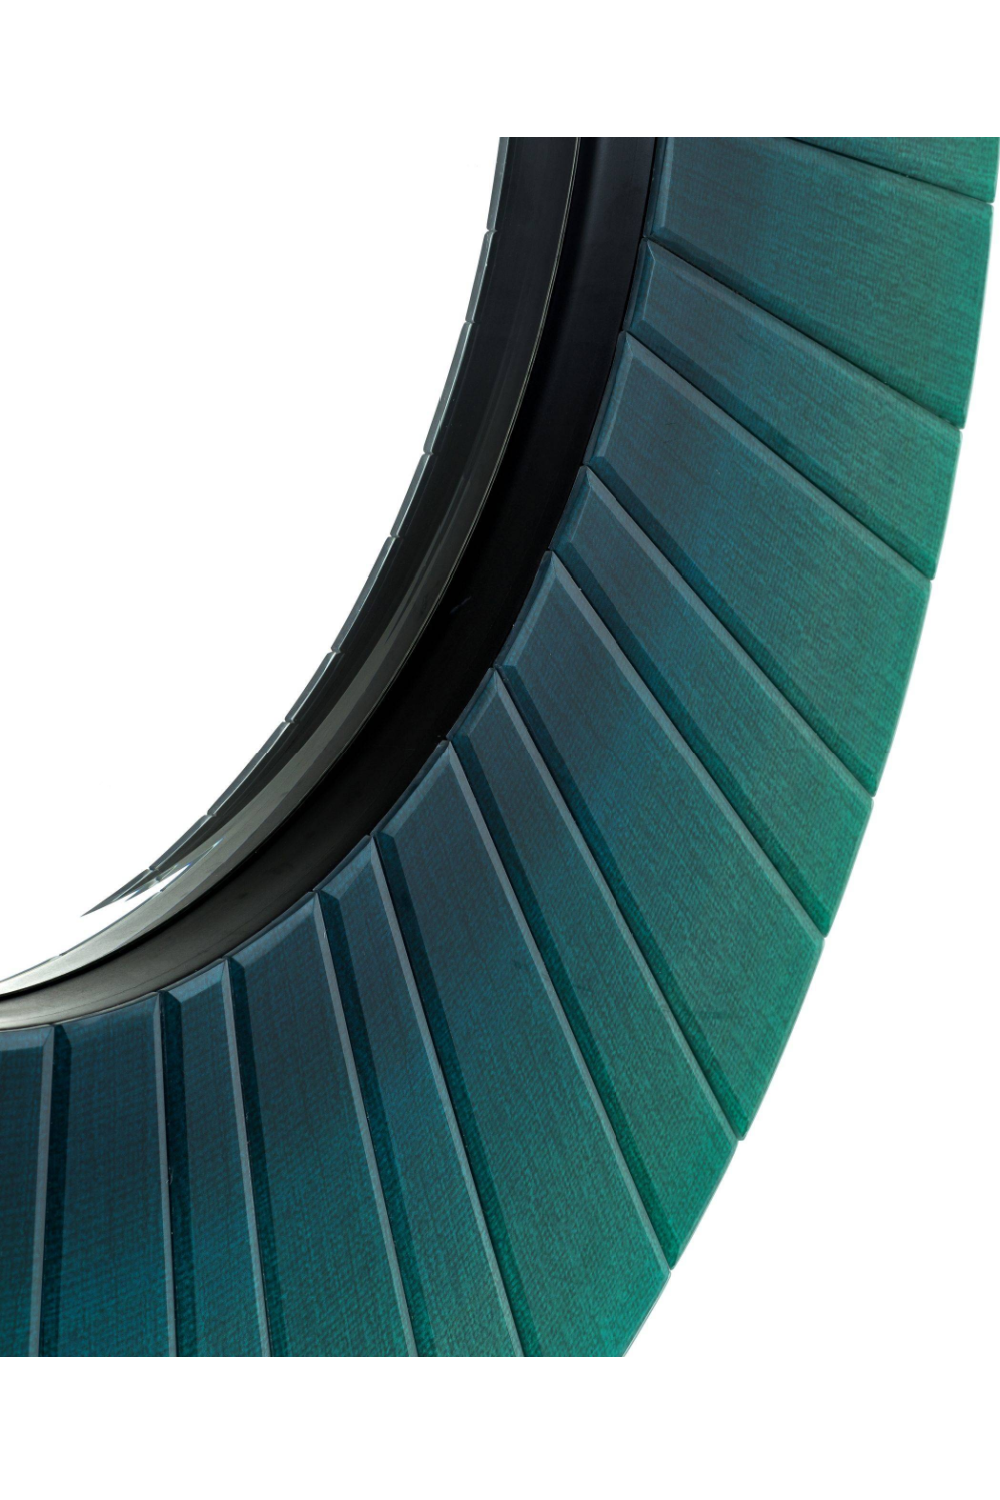 Green Round Mirror | Eichholtz Lecanto | OROA